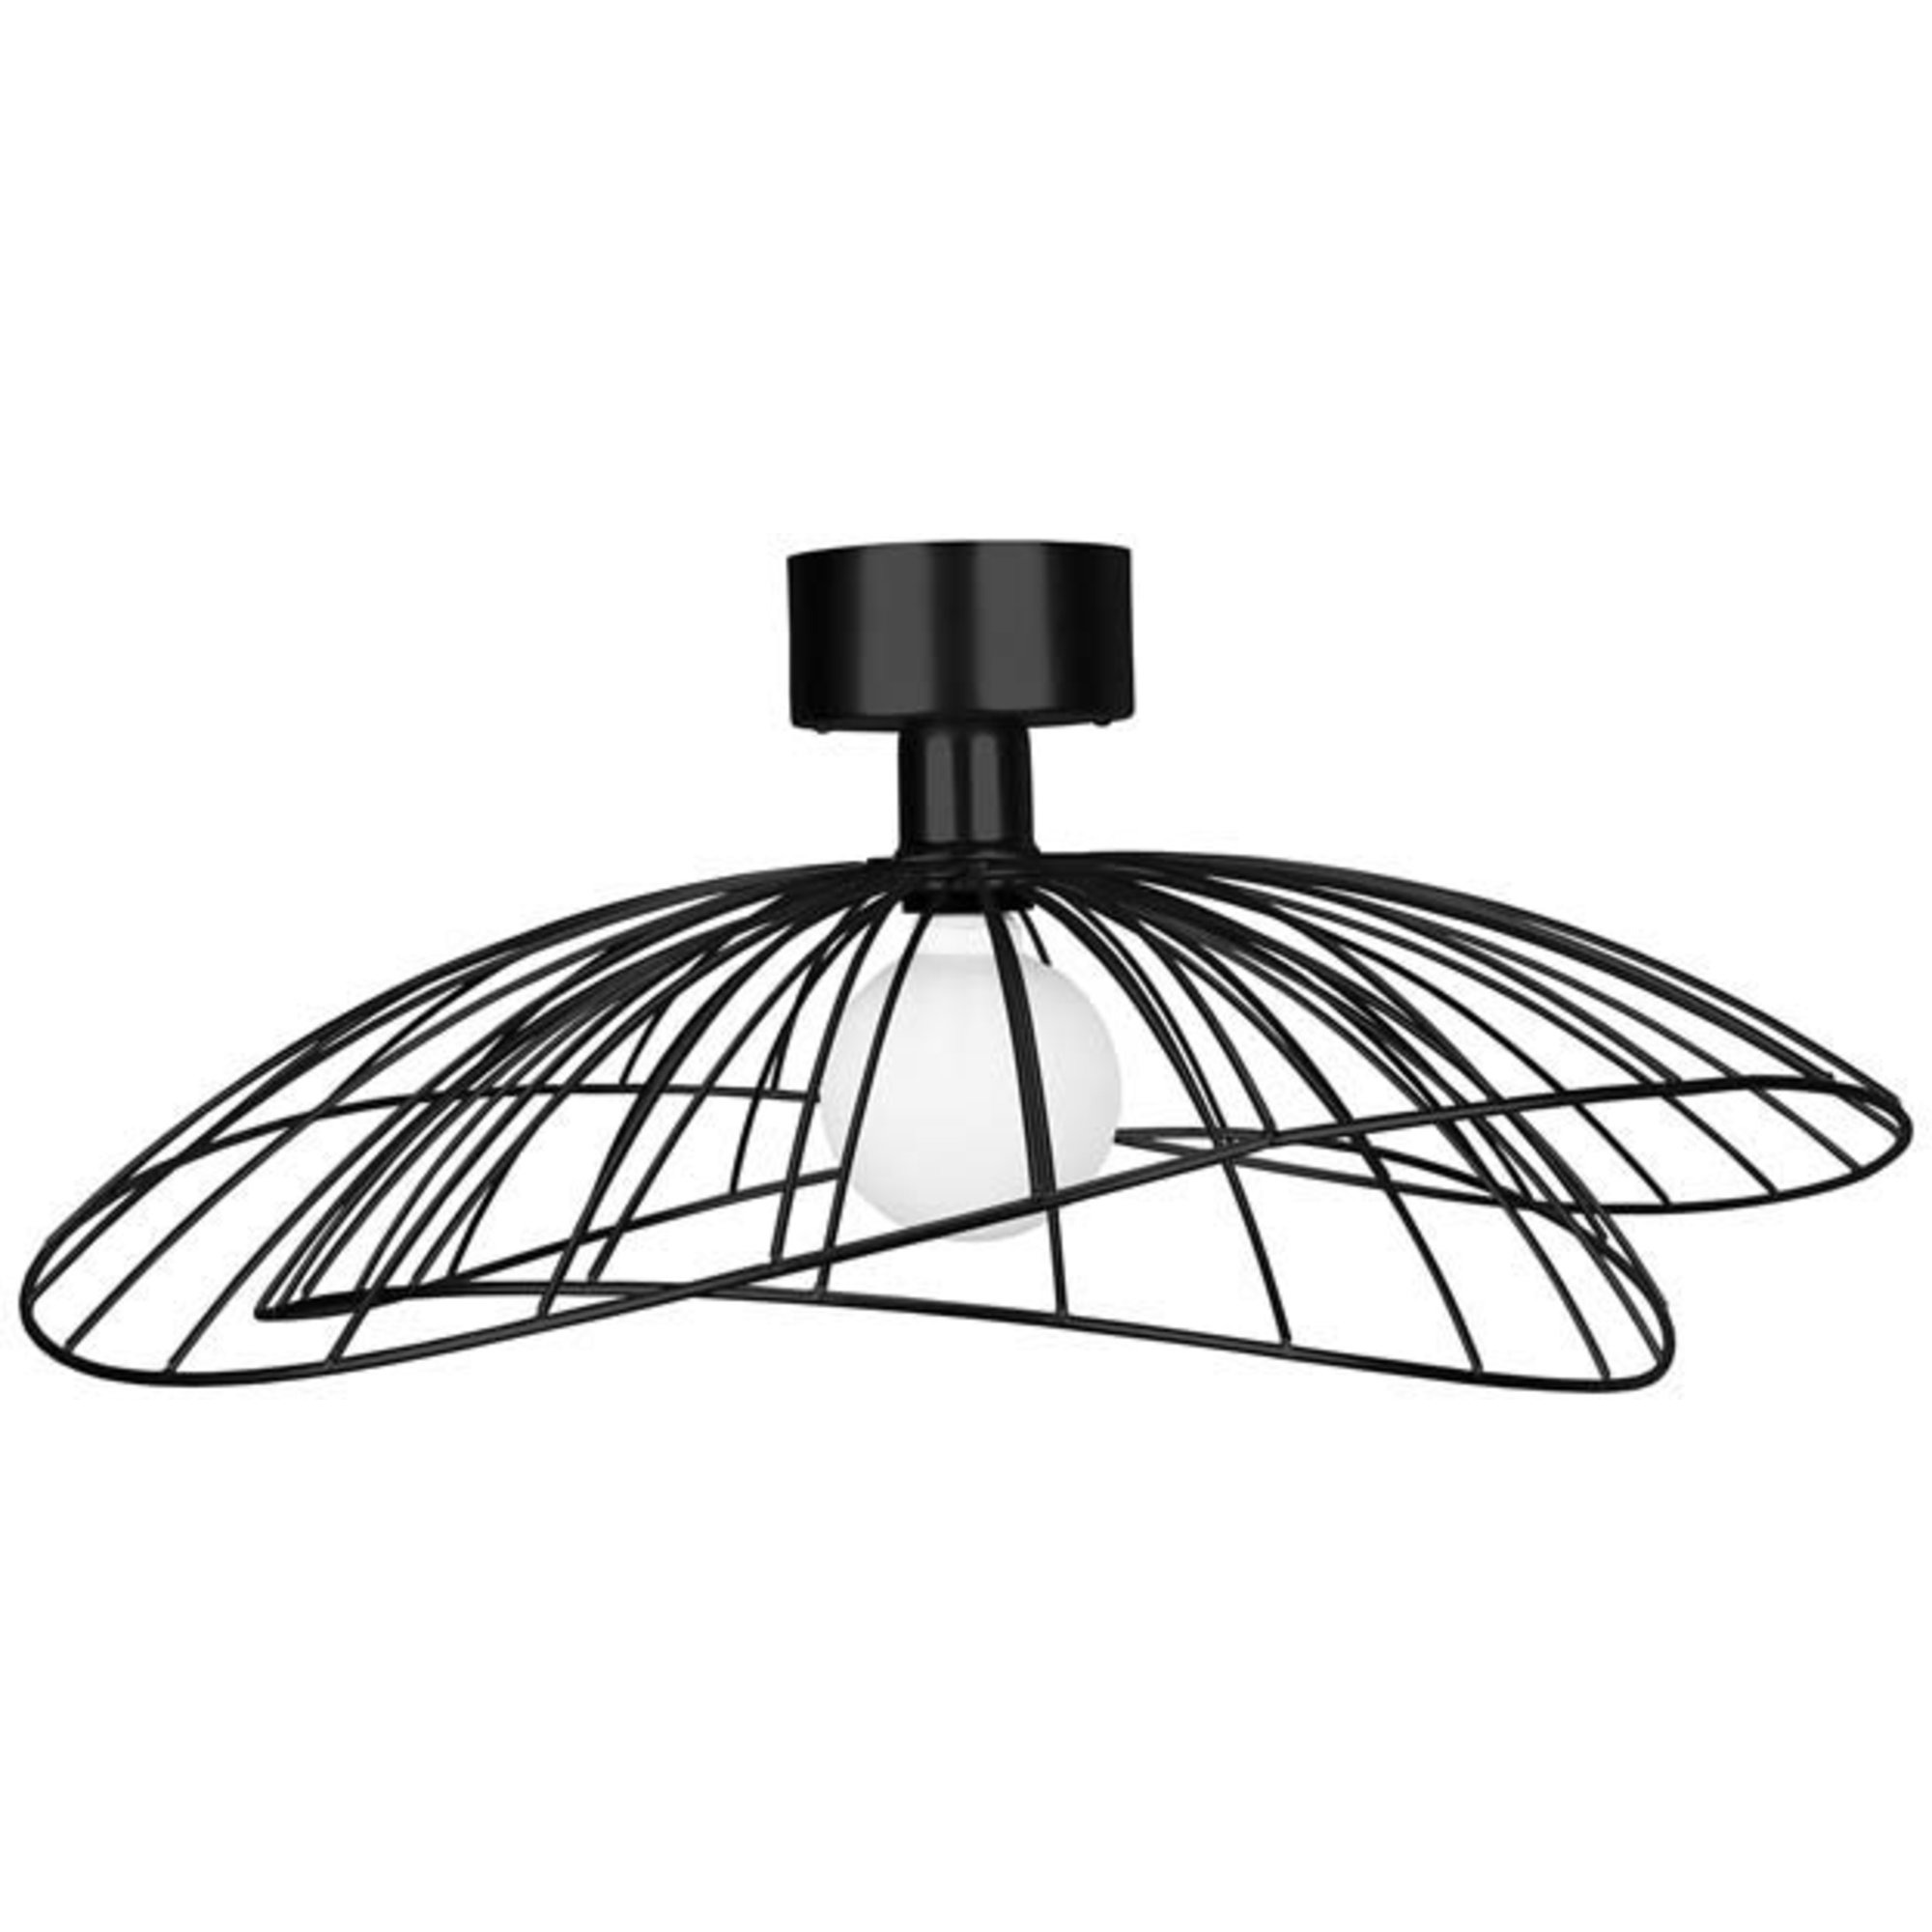 Globen Lighting Plafond / Vägg Ray Svart